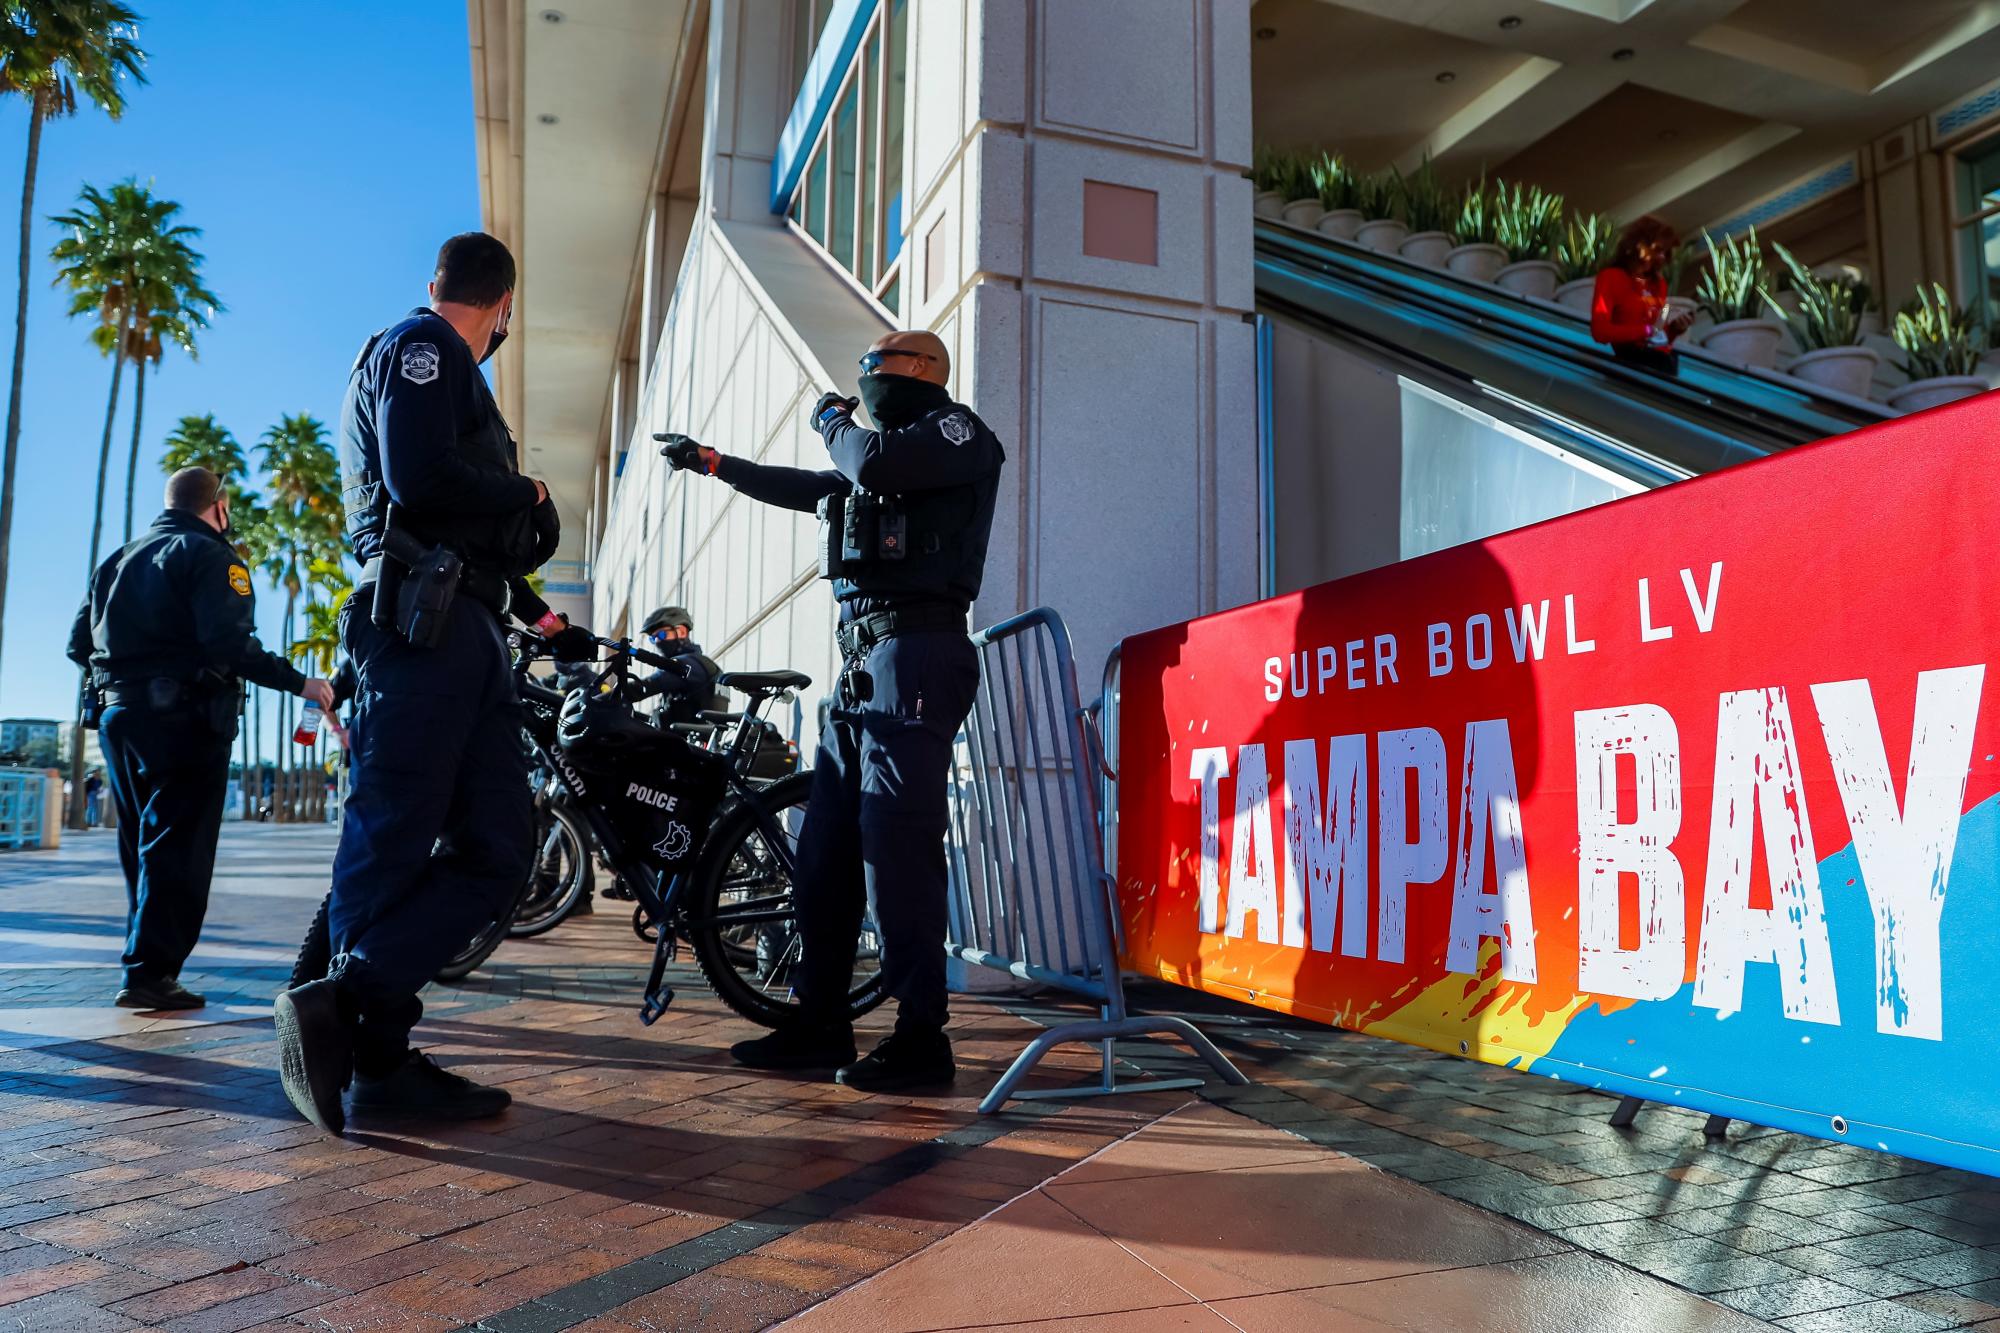 El Campeón de la AFC Kansas City Chiefs y el Campeón de la NFC Tampa Bay Buccaneers se enfrentarán en NFL Super Bowl LV en el Estadio Raymond James el 07 de febrero de 2021. Oficiales de la Policía patrullan fuera del lugar donde será el enfrentamiento. (EFE/ EPA/Erik S. Lesser)